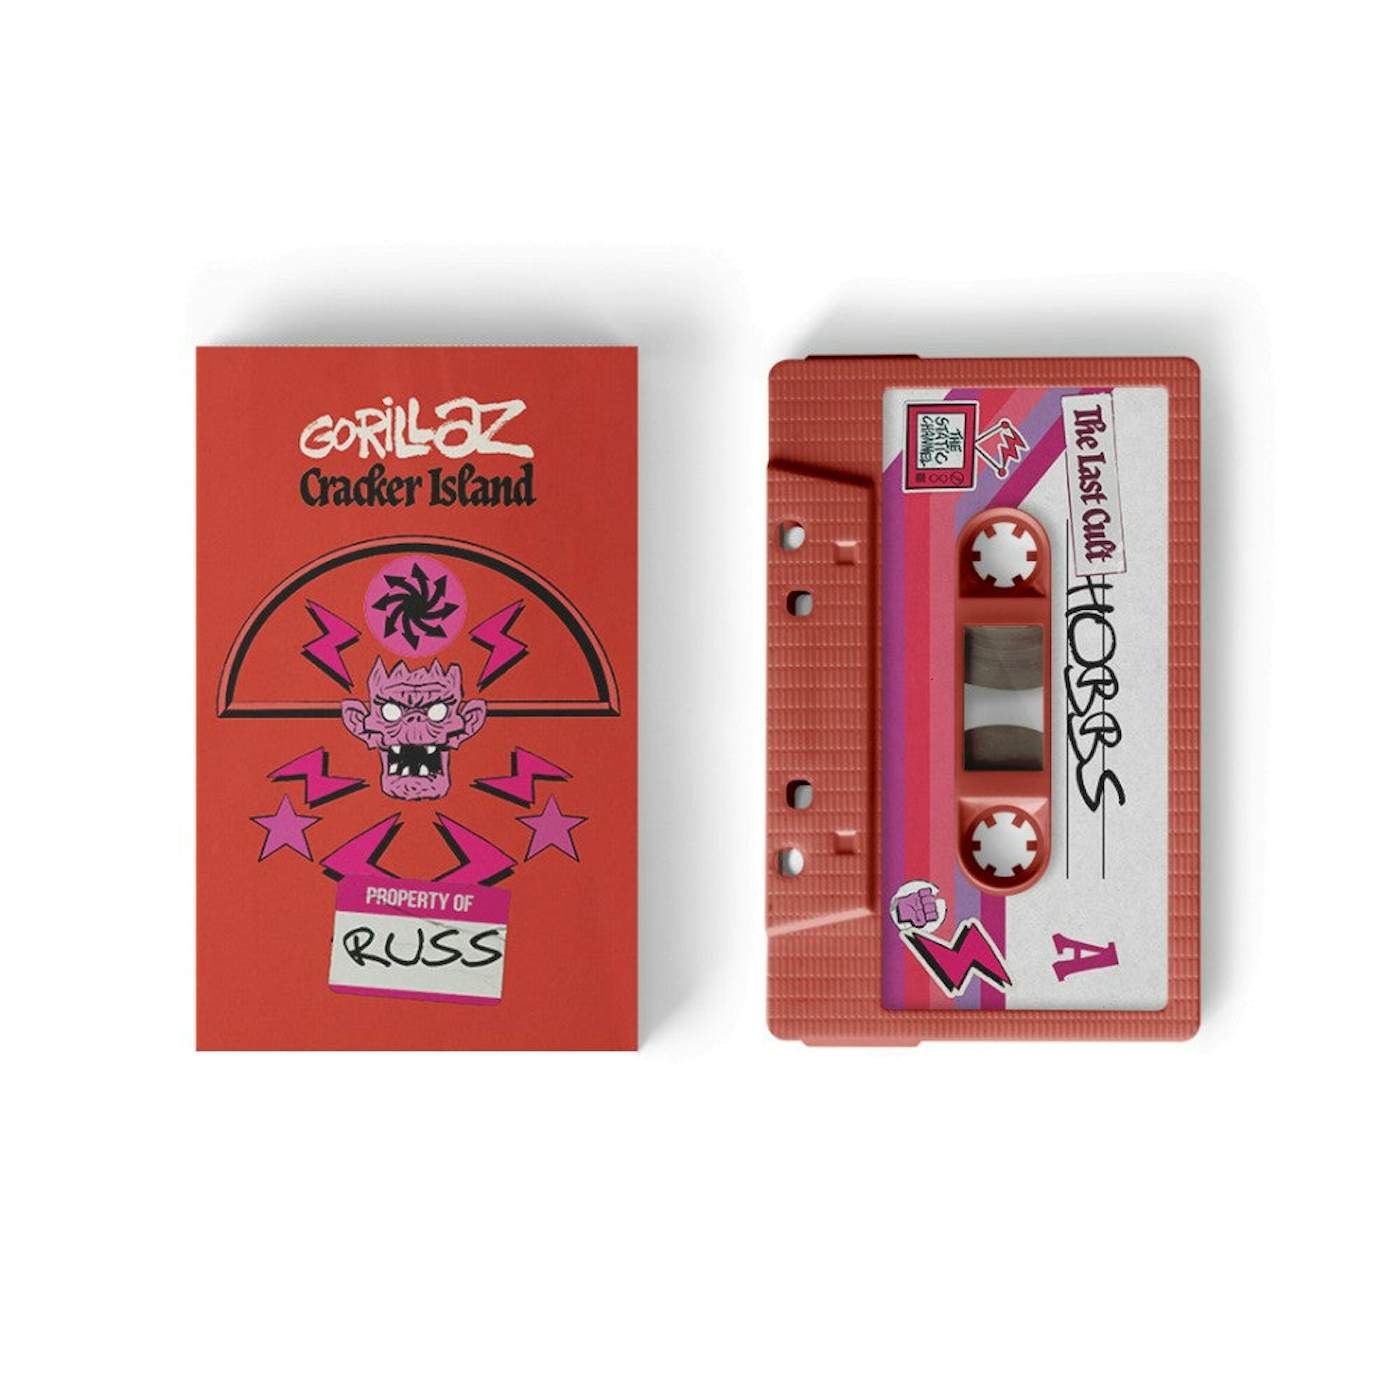 Gorillaz Cracker Island Cassette - Russel